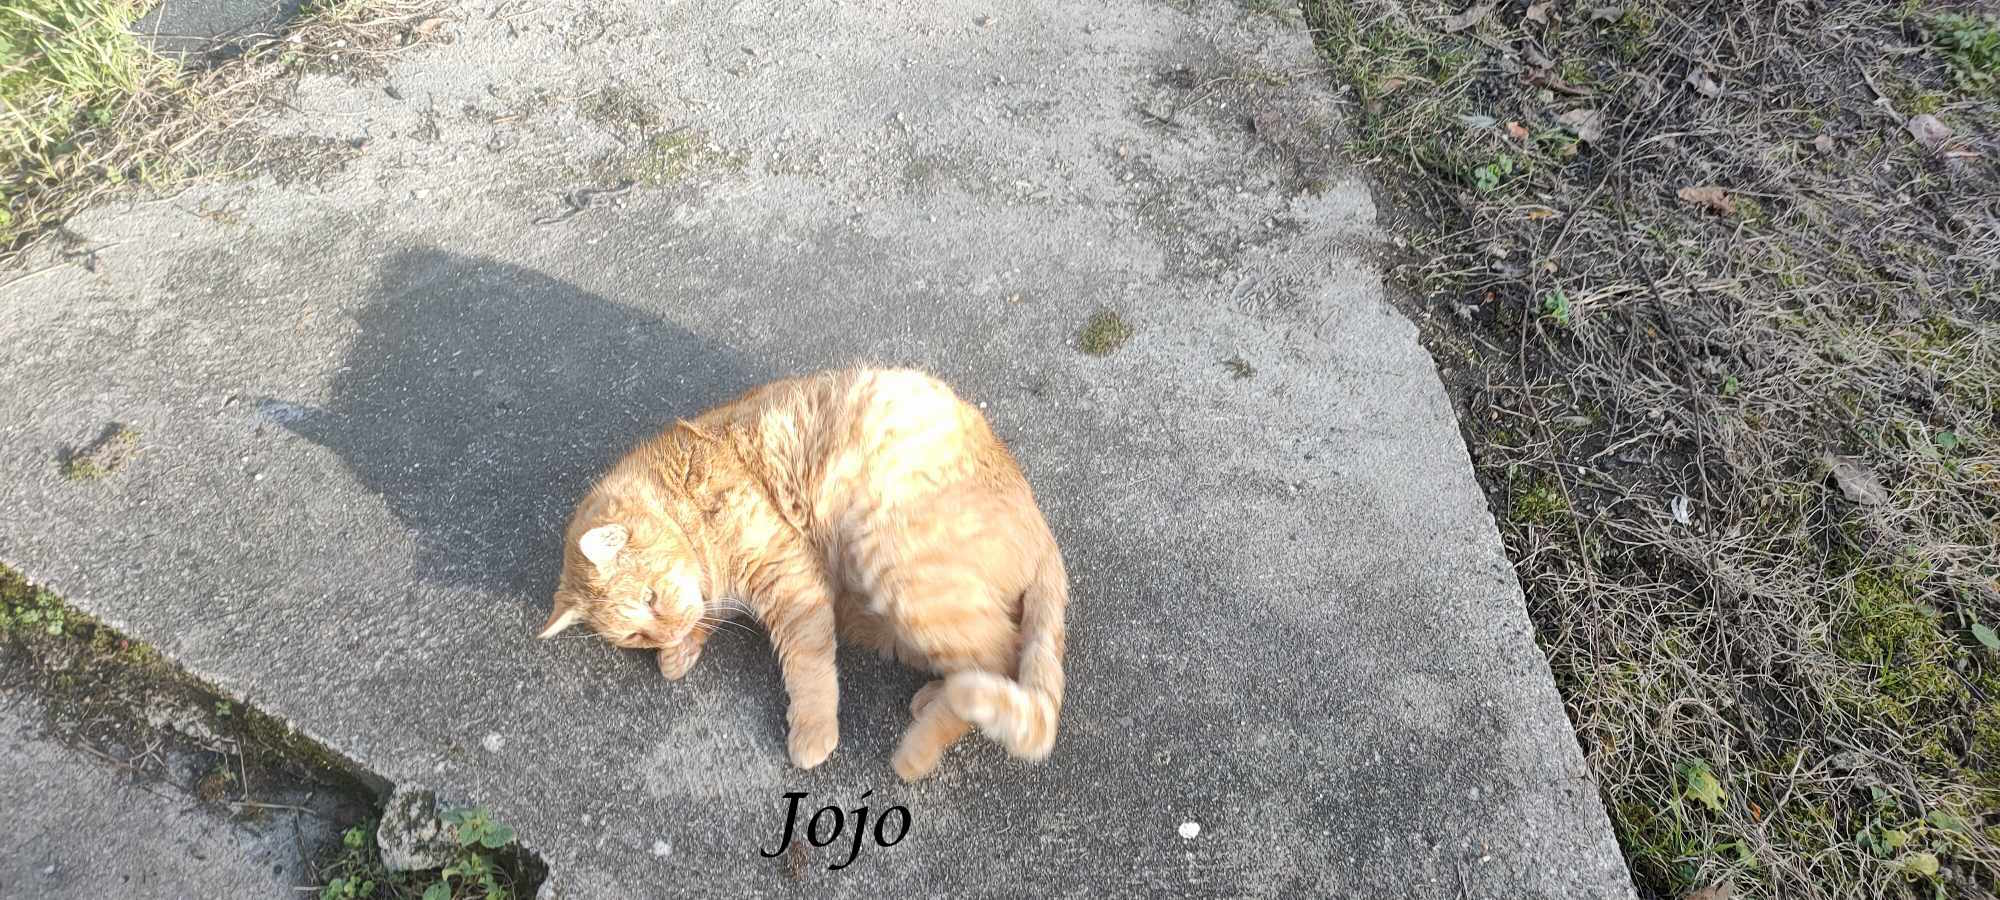 Jojo